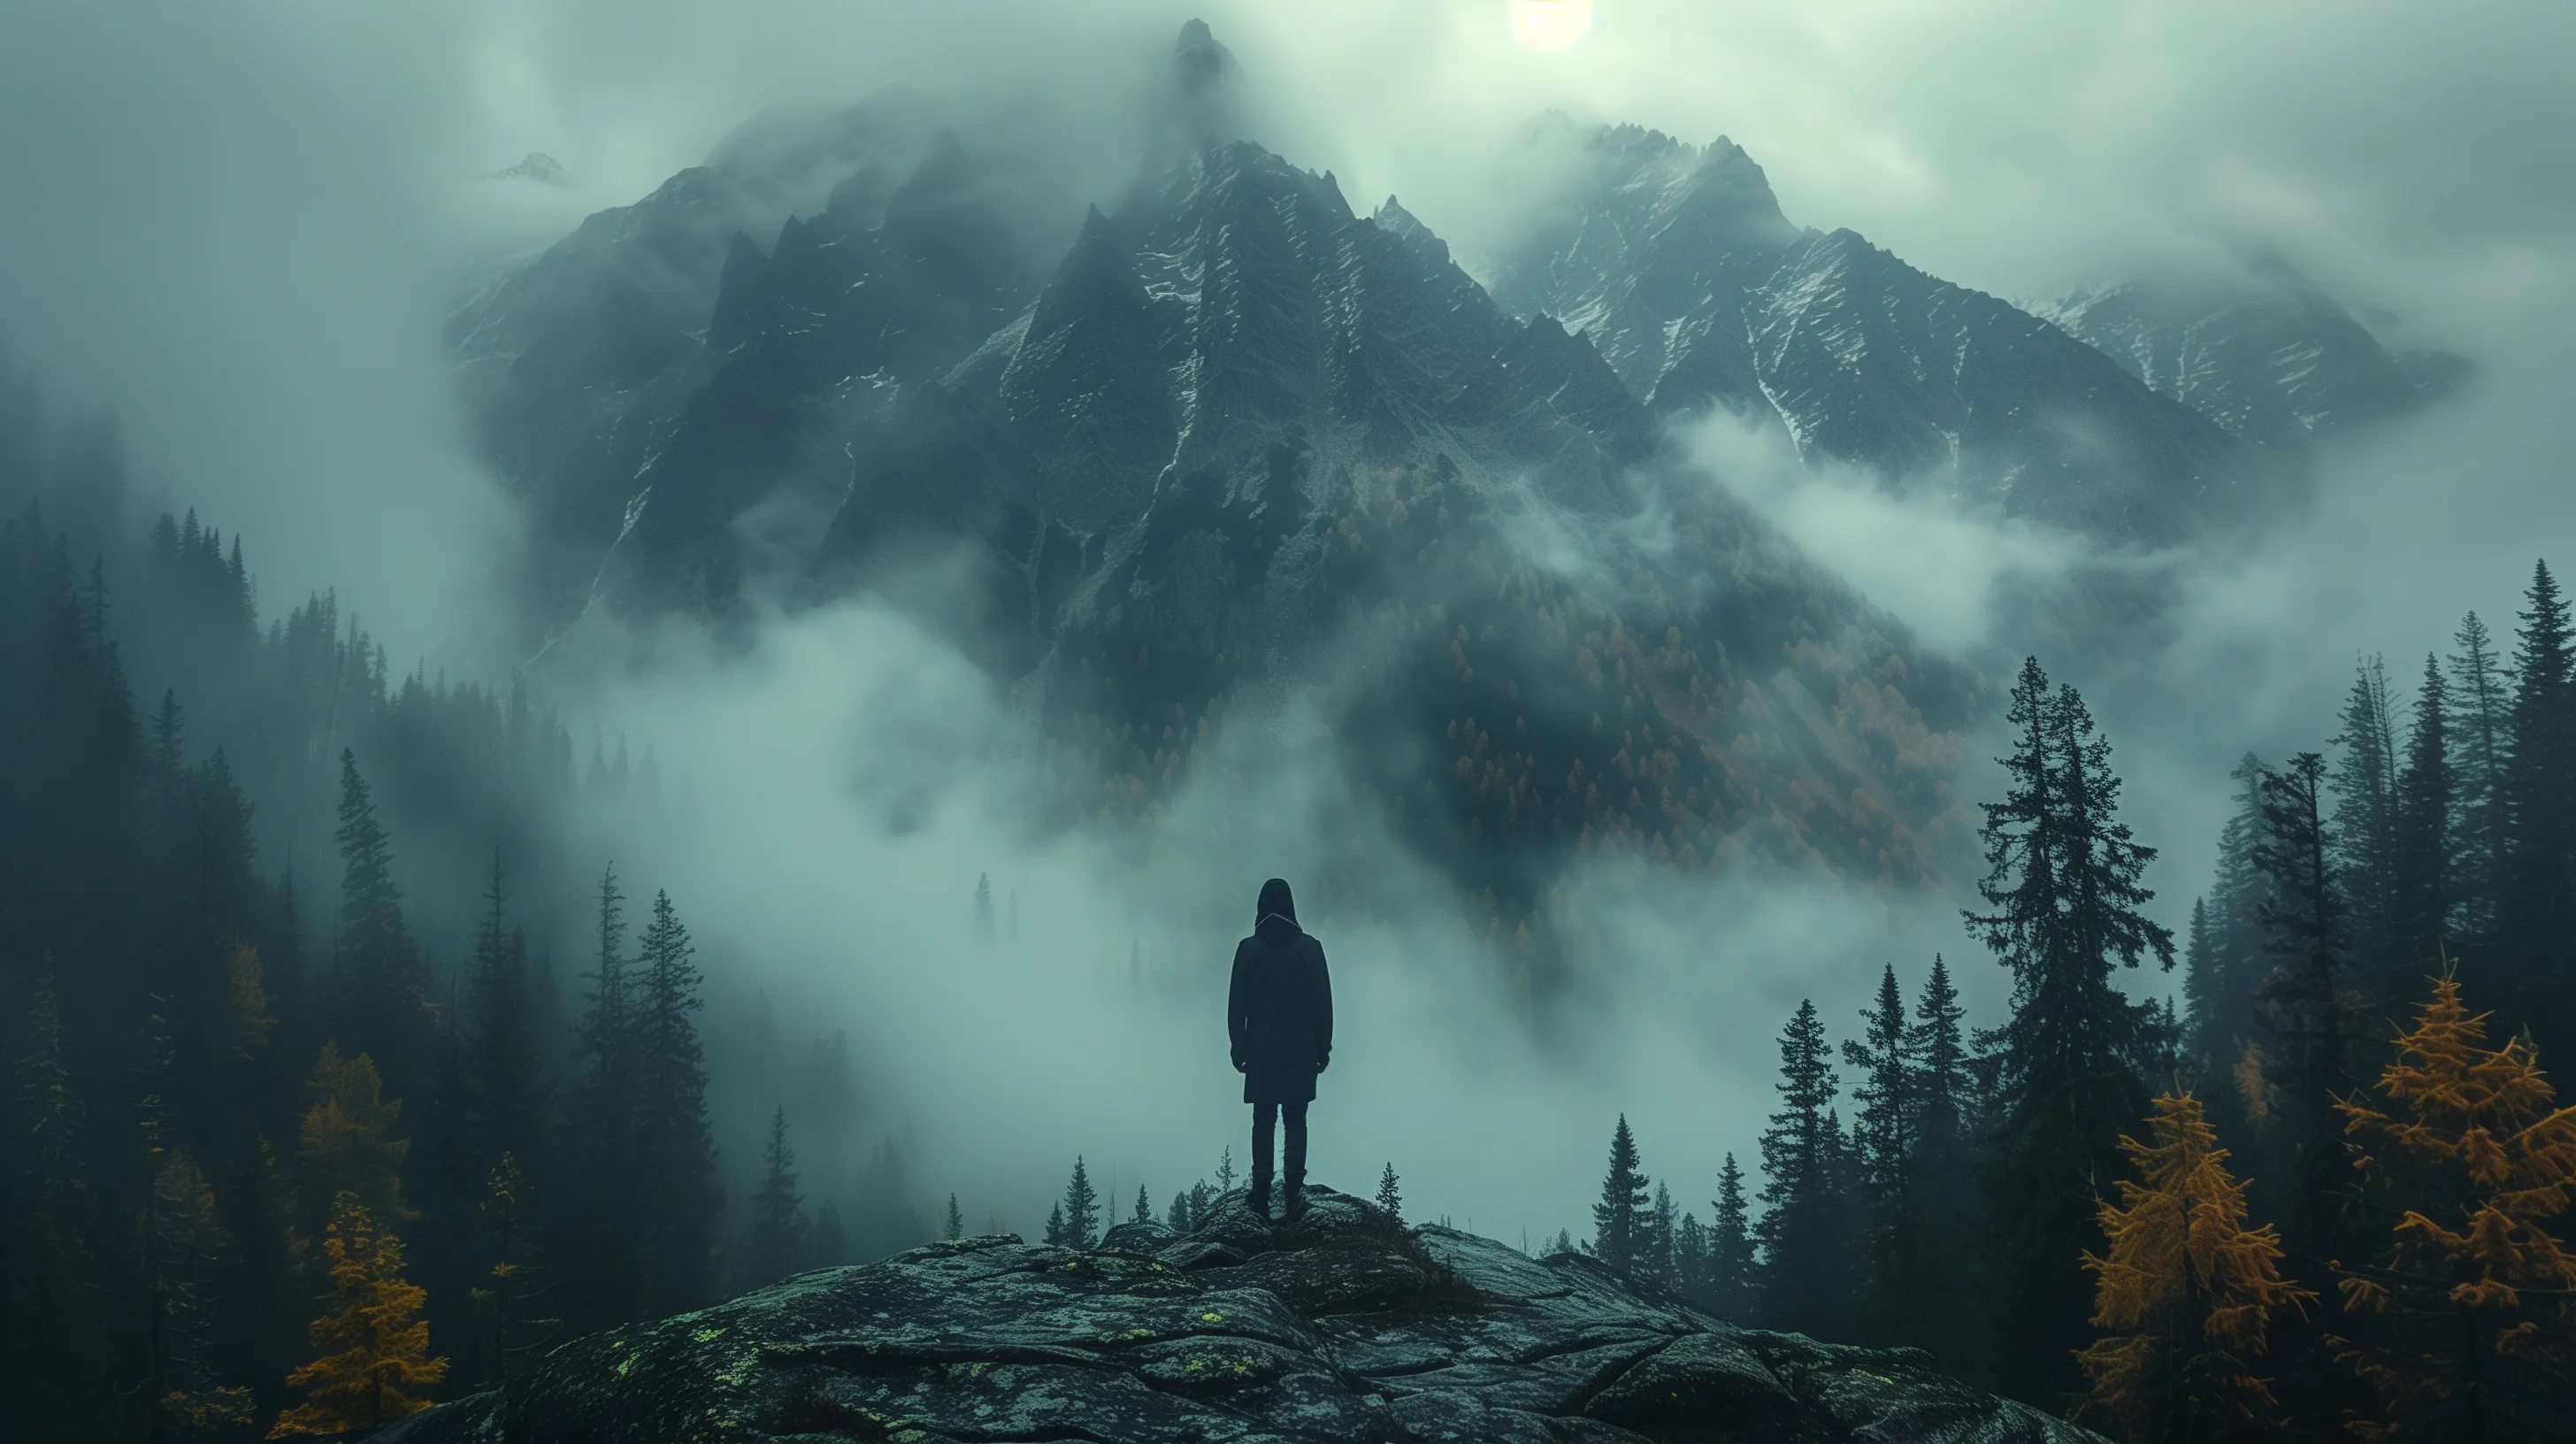 Frasi da riflettere - Un uomo si trova davanti a una montagna avvolta nella nebbia.